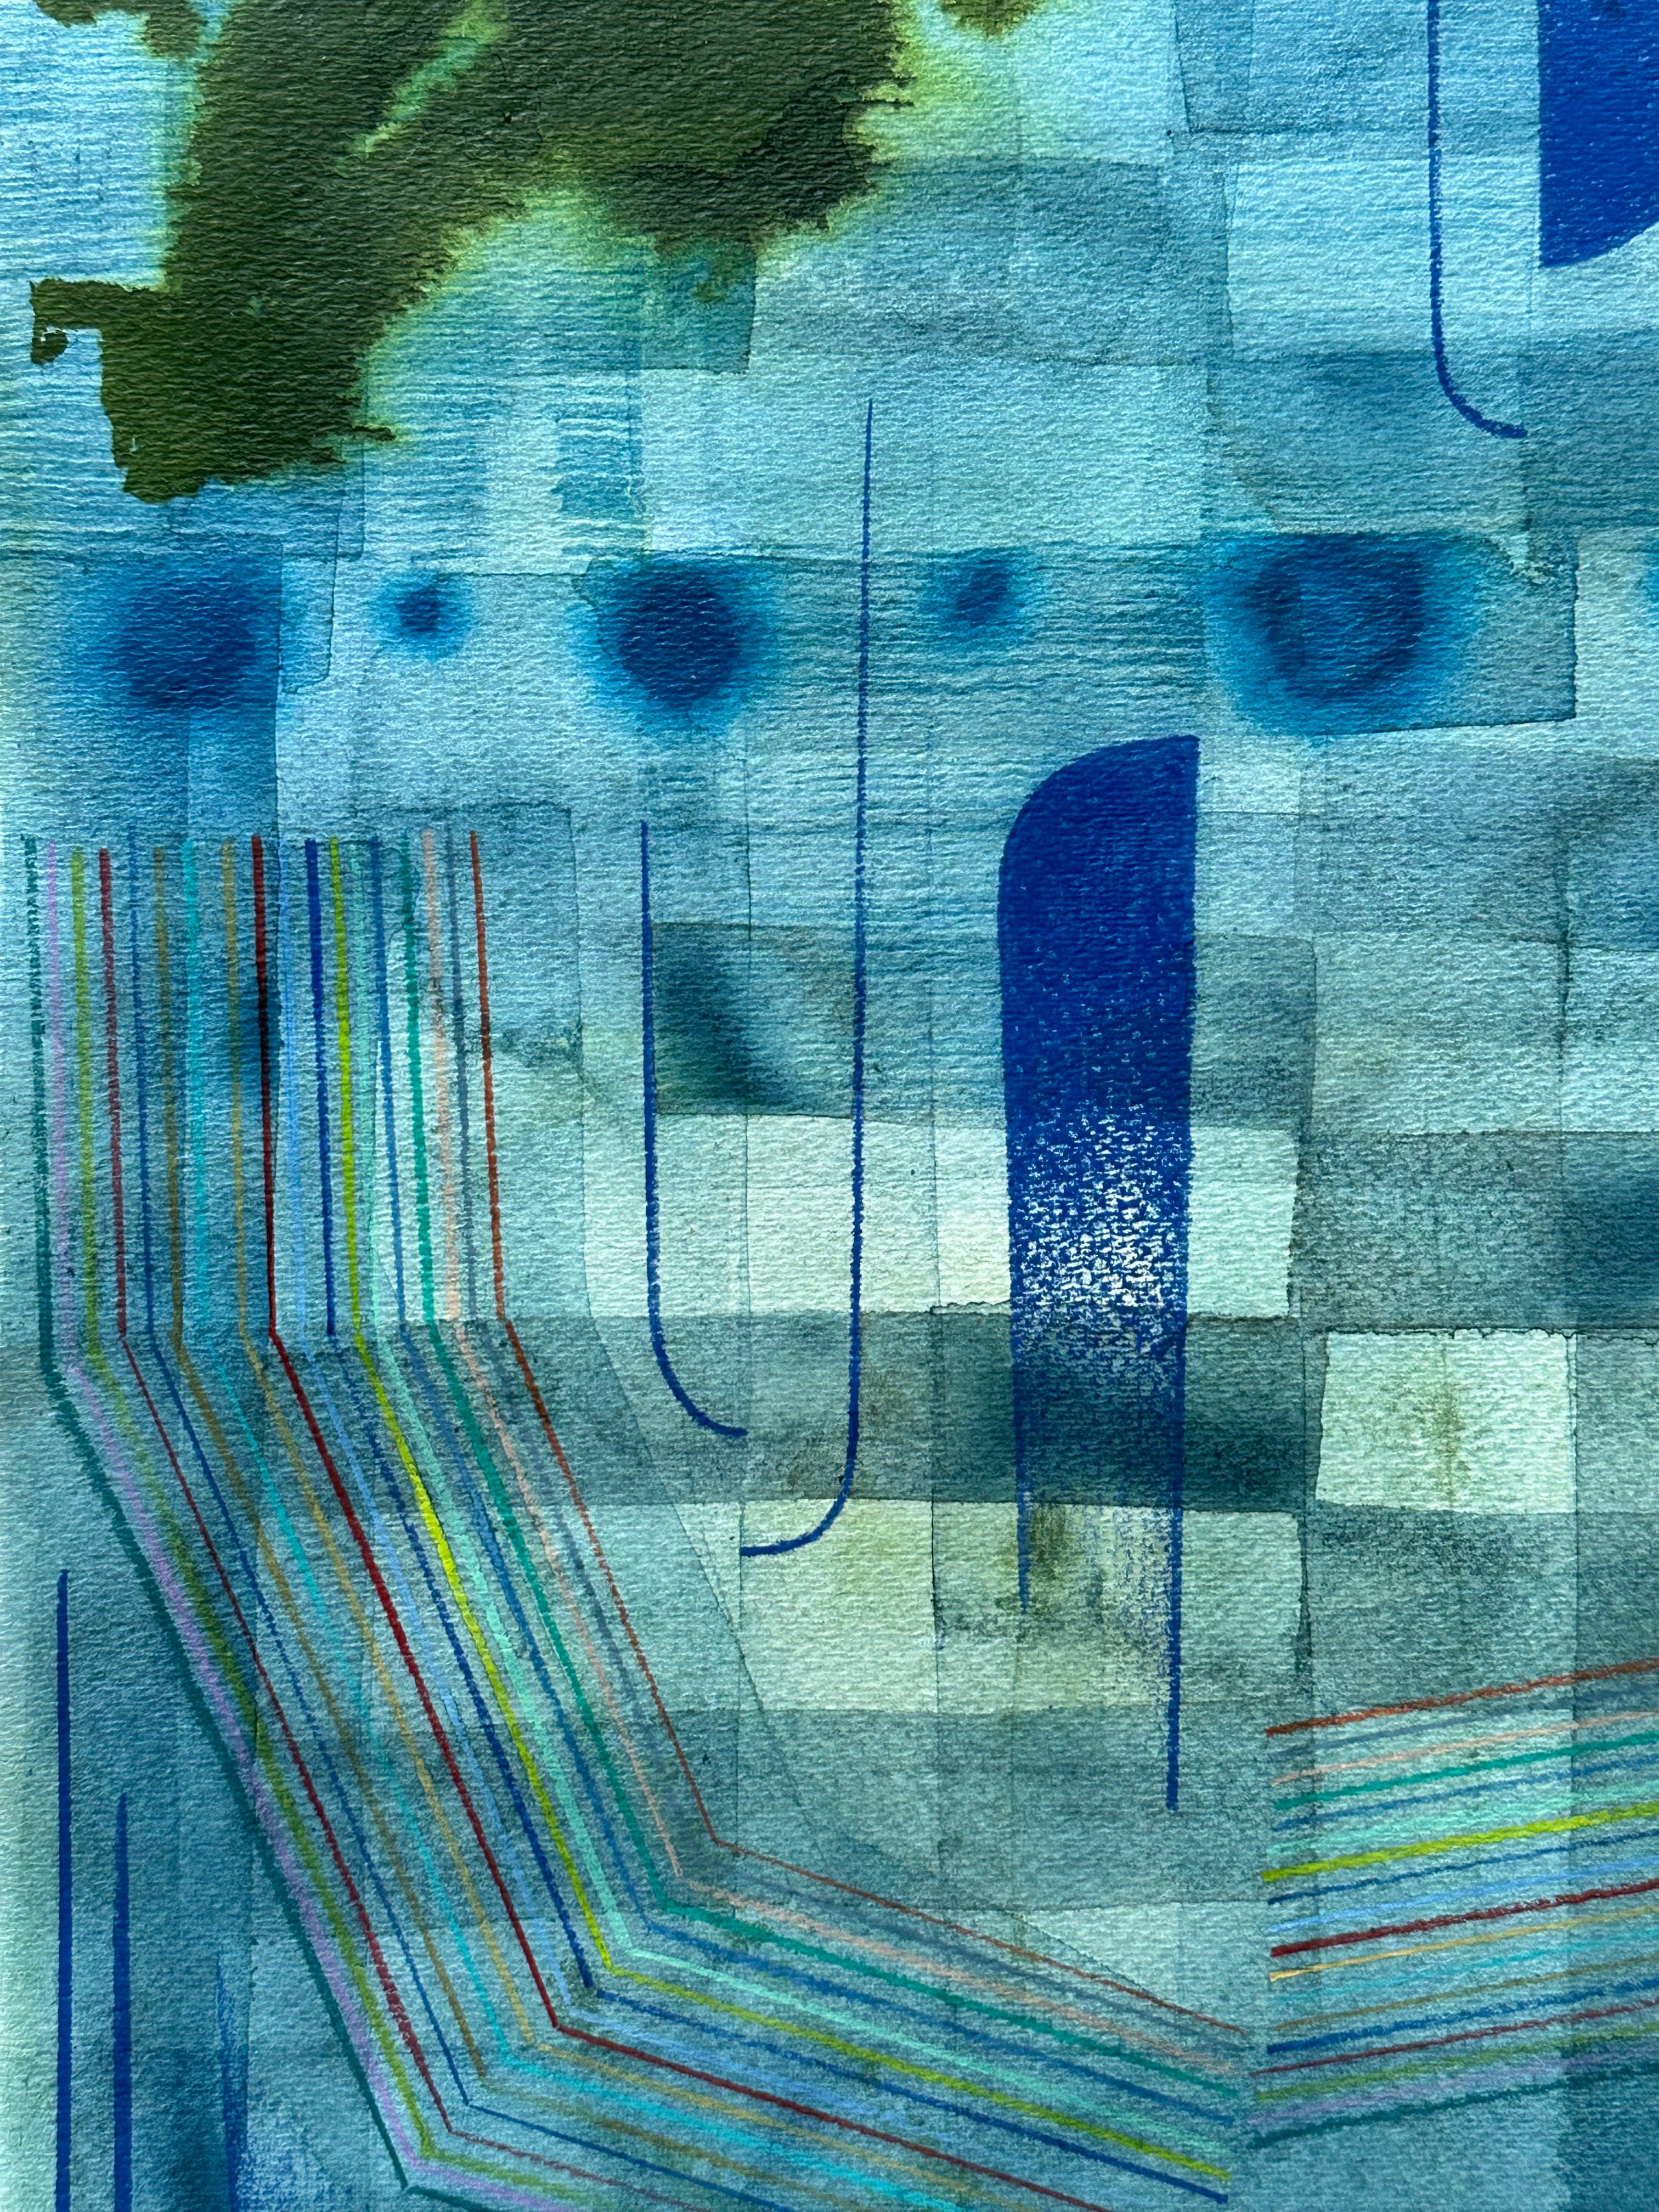 Sorgfältig angeordnete Muster, geometrische Formen und zarte Linien in Indigo, leuchtendem Lapisblau und Olivgrün ergänzen einen teeblauen Hintergrund. Verso signiert.

Brown erforscht eine Welt jenseits der greifbaren Realität und sucht nach dem